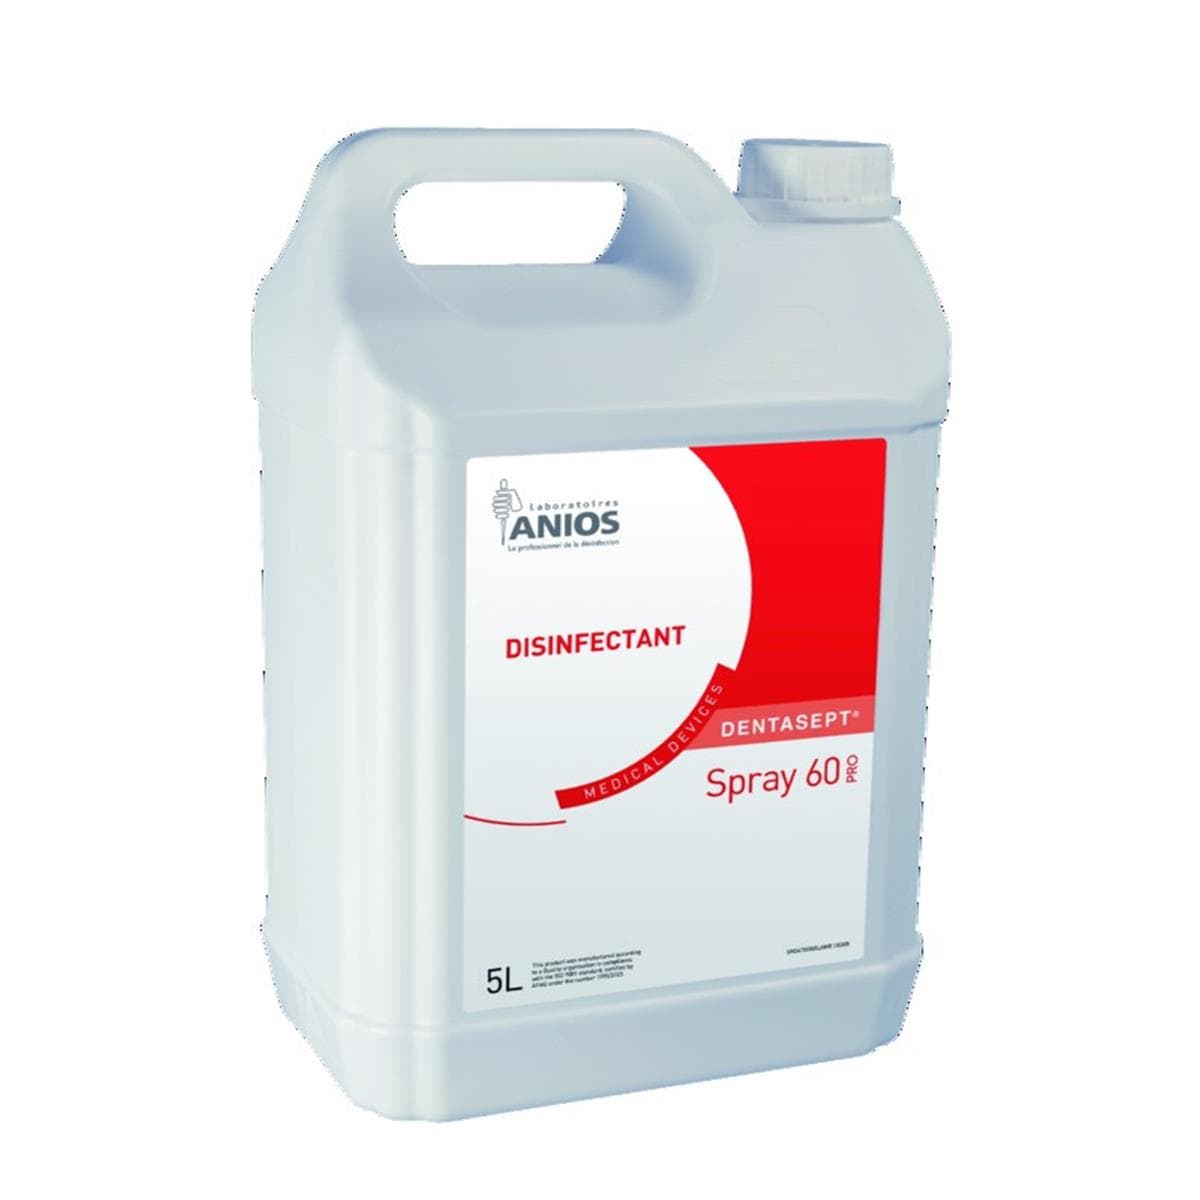 Dentasept spray 60 Pro ANIOS - Bidon de 5L